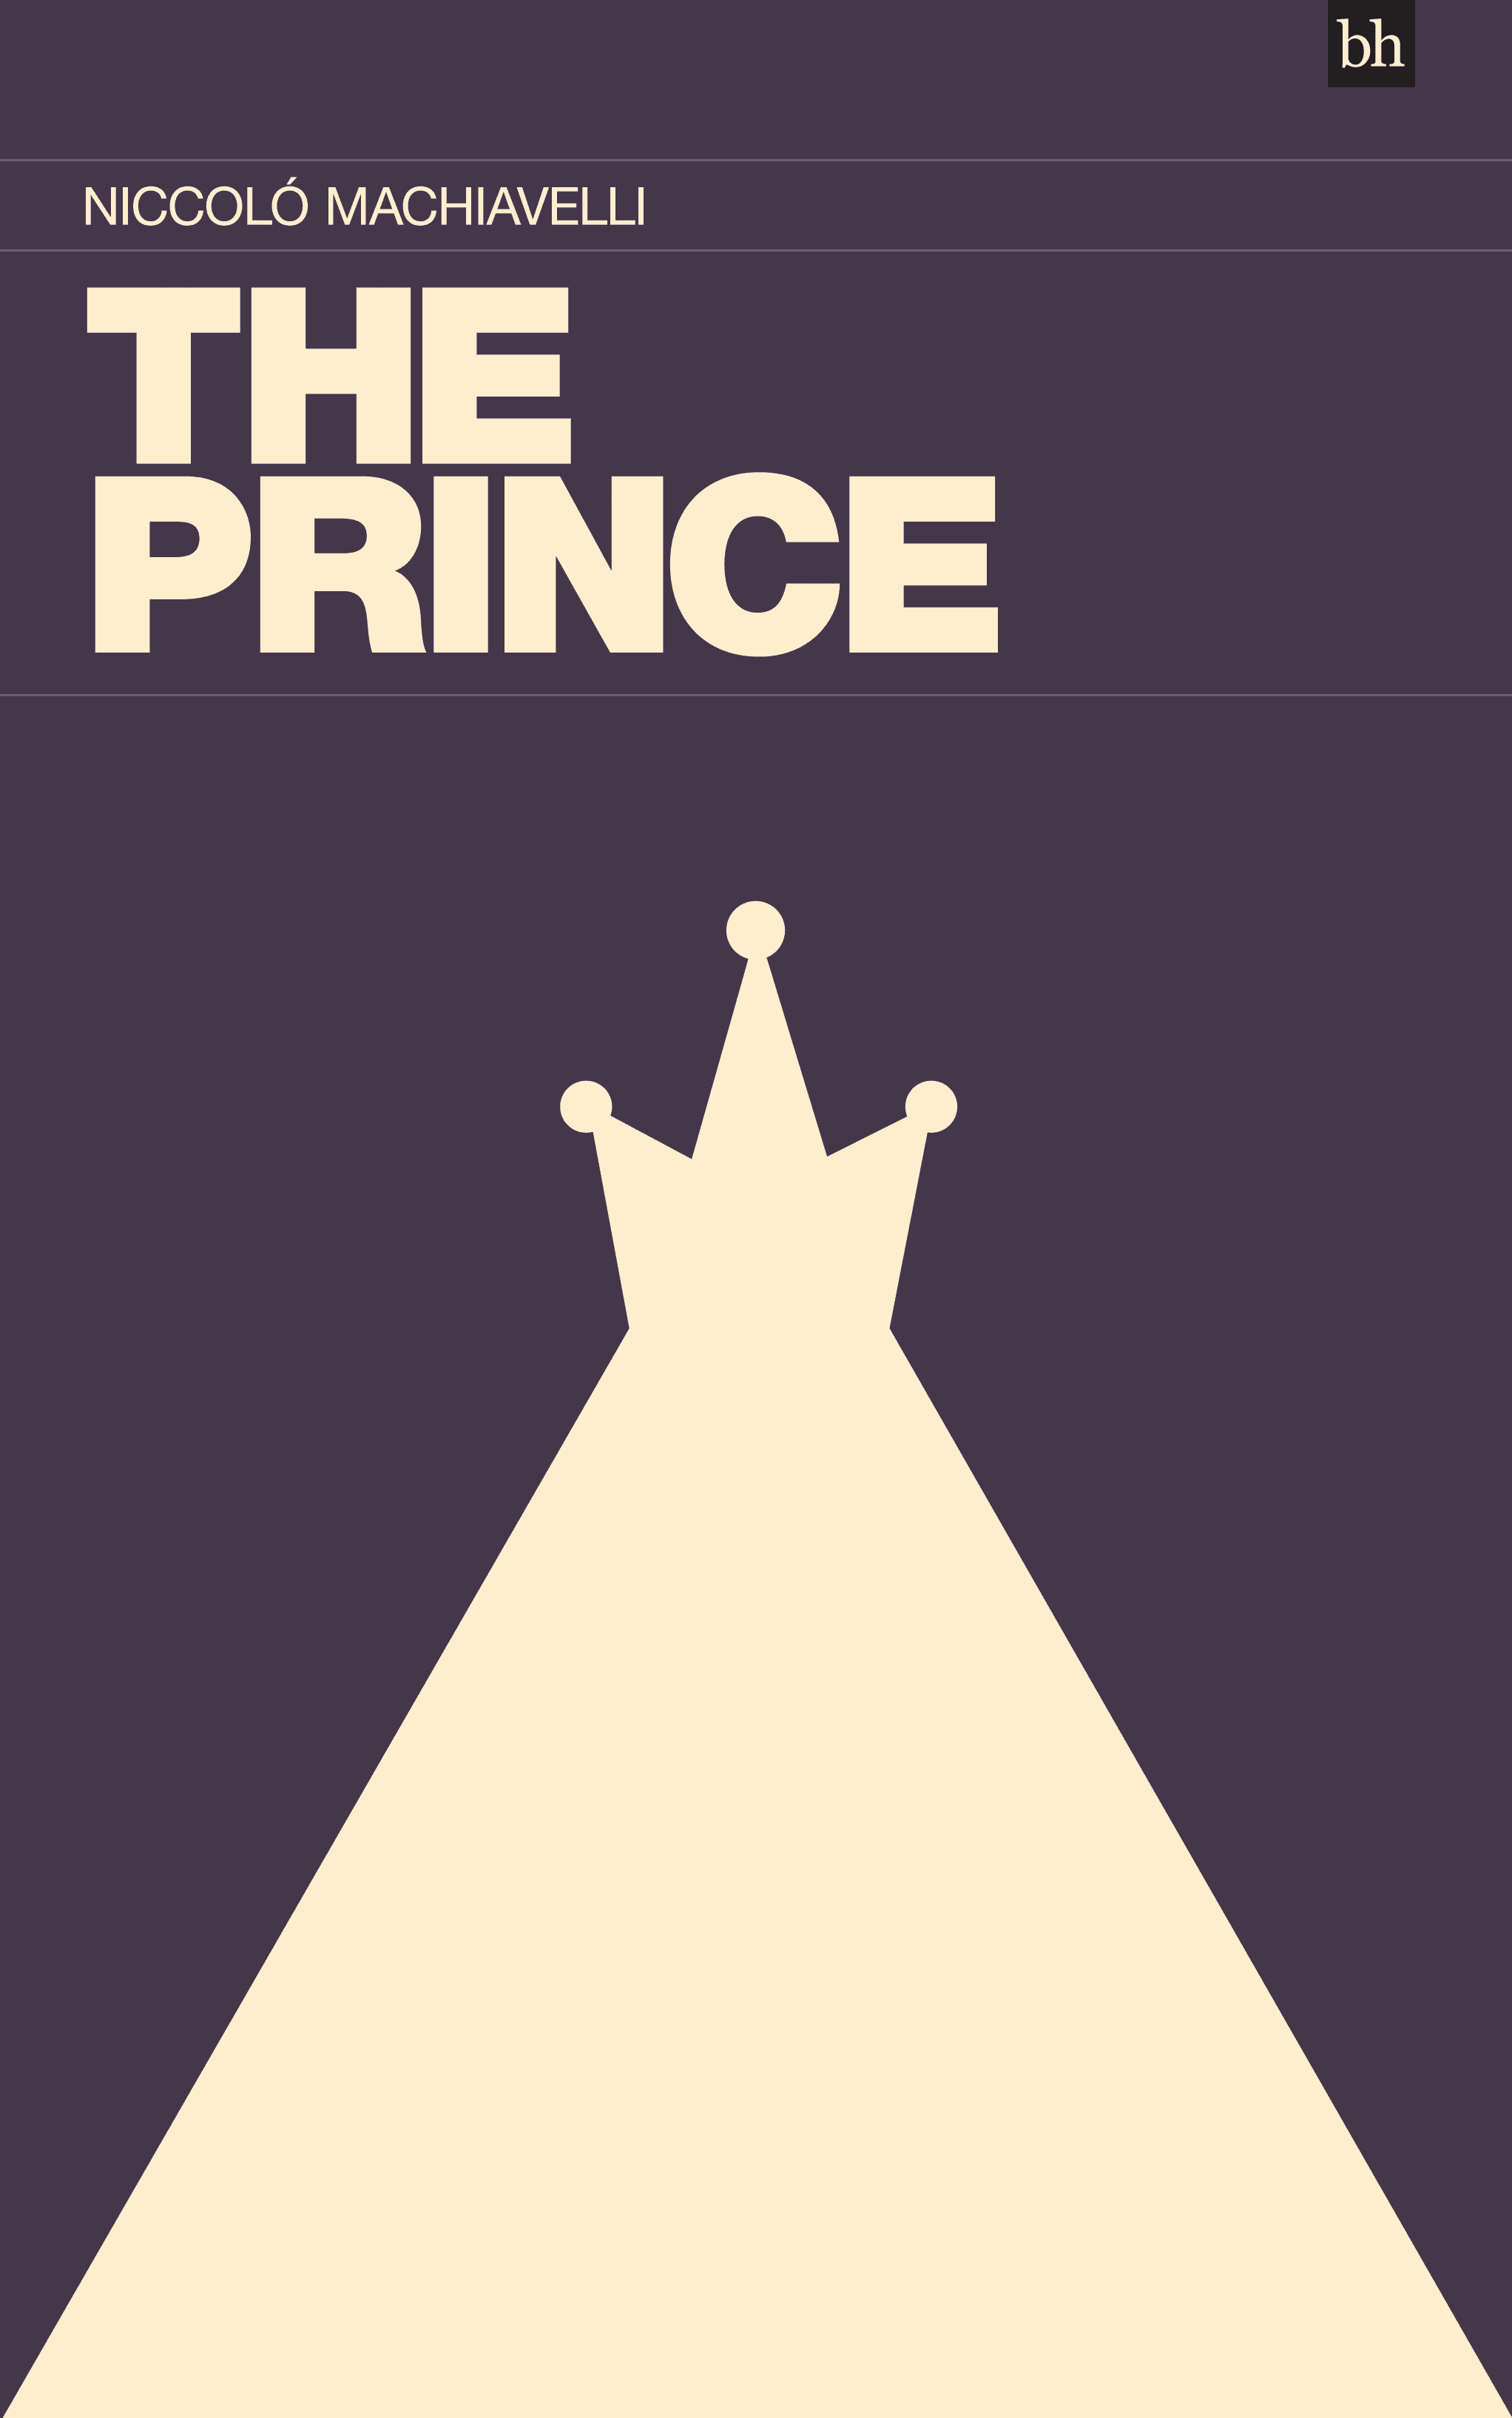 The Prince by Niccoló Machiavelli